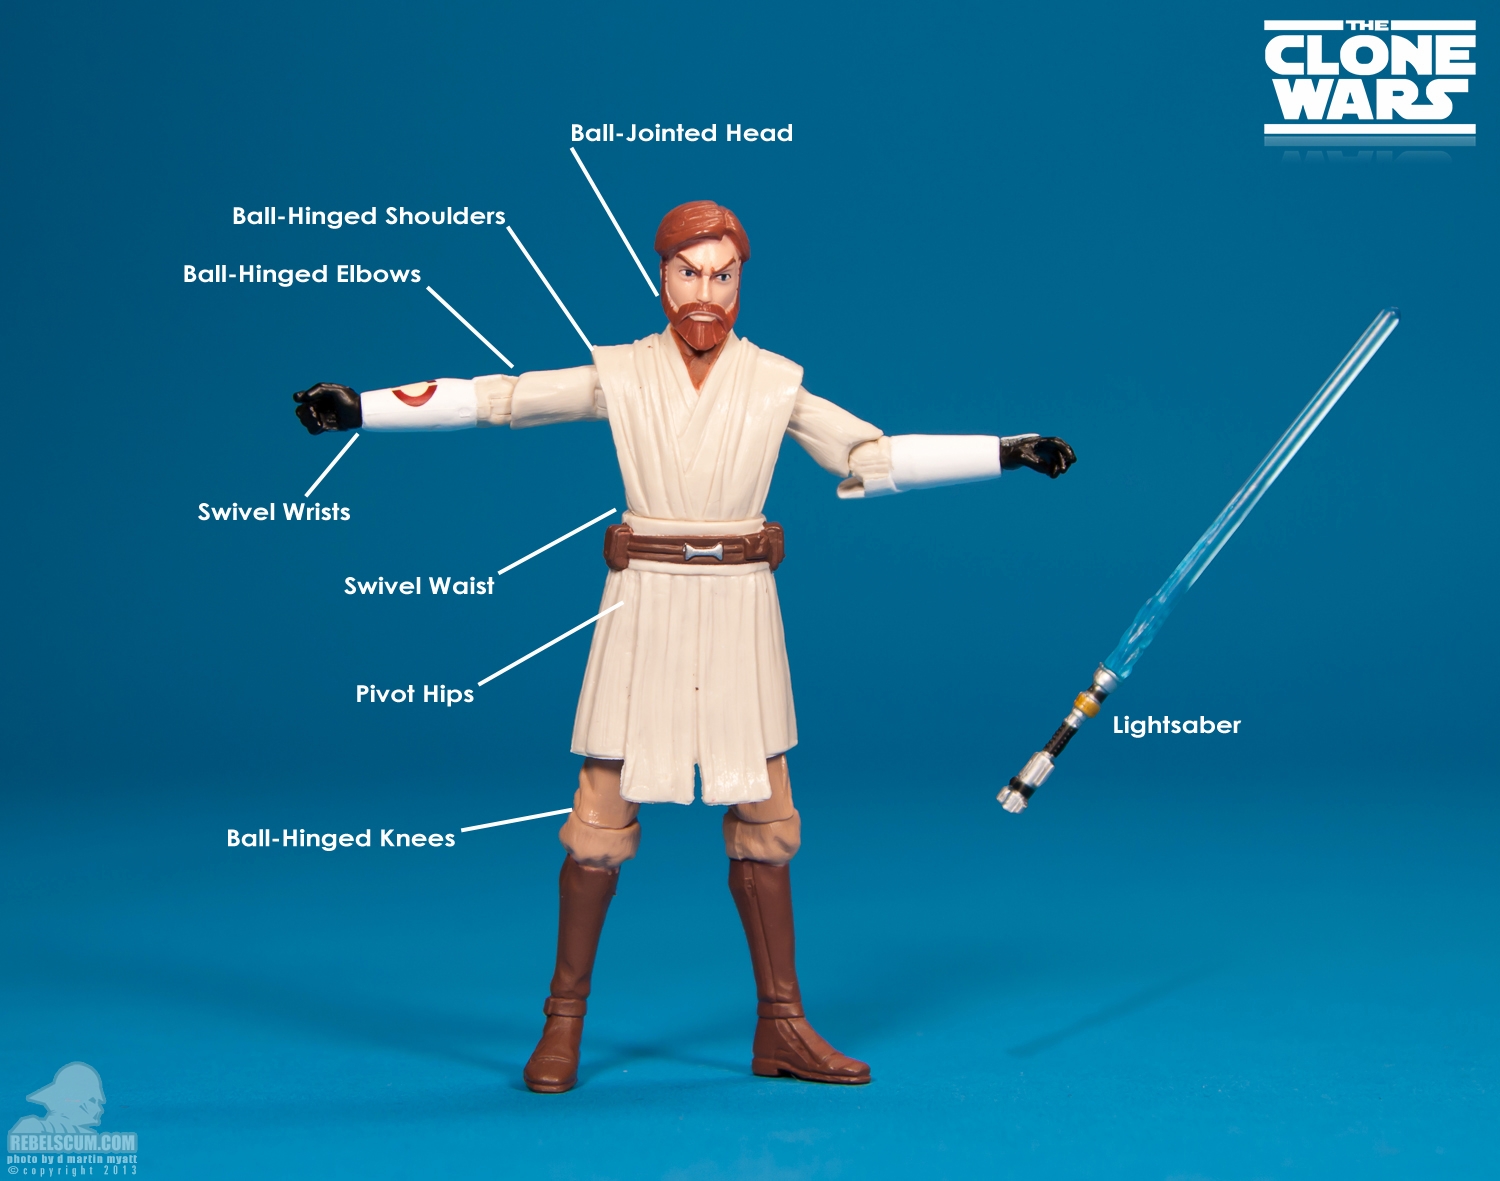 CW01_2013_Obi-Wan_Kenobi_ The_Clone_Wars_Star_Wars_Hasbro-10.jpg